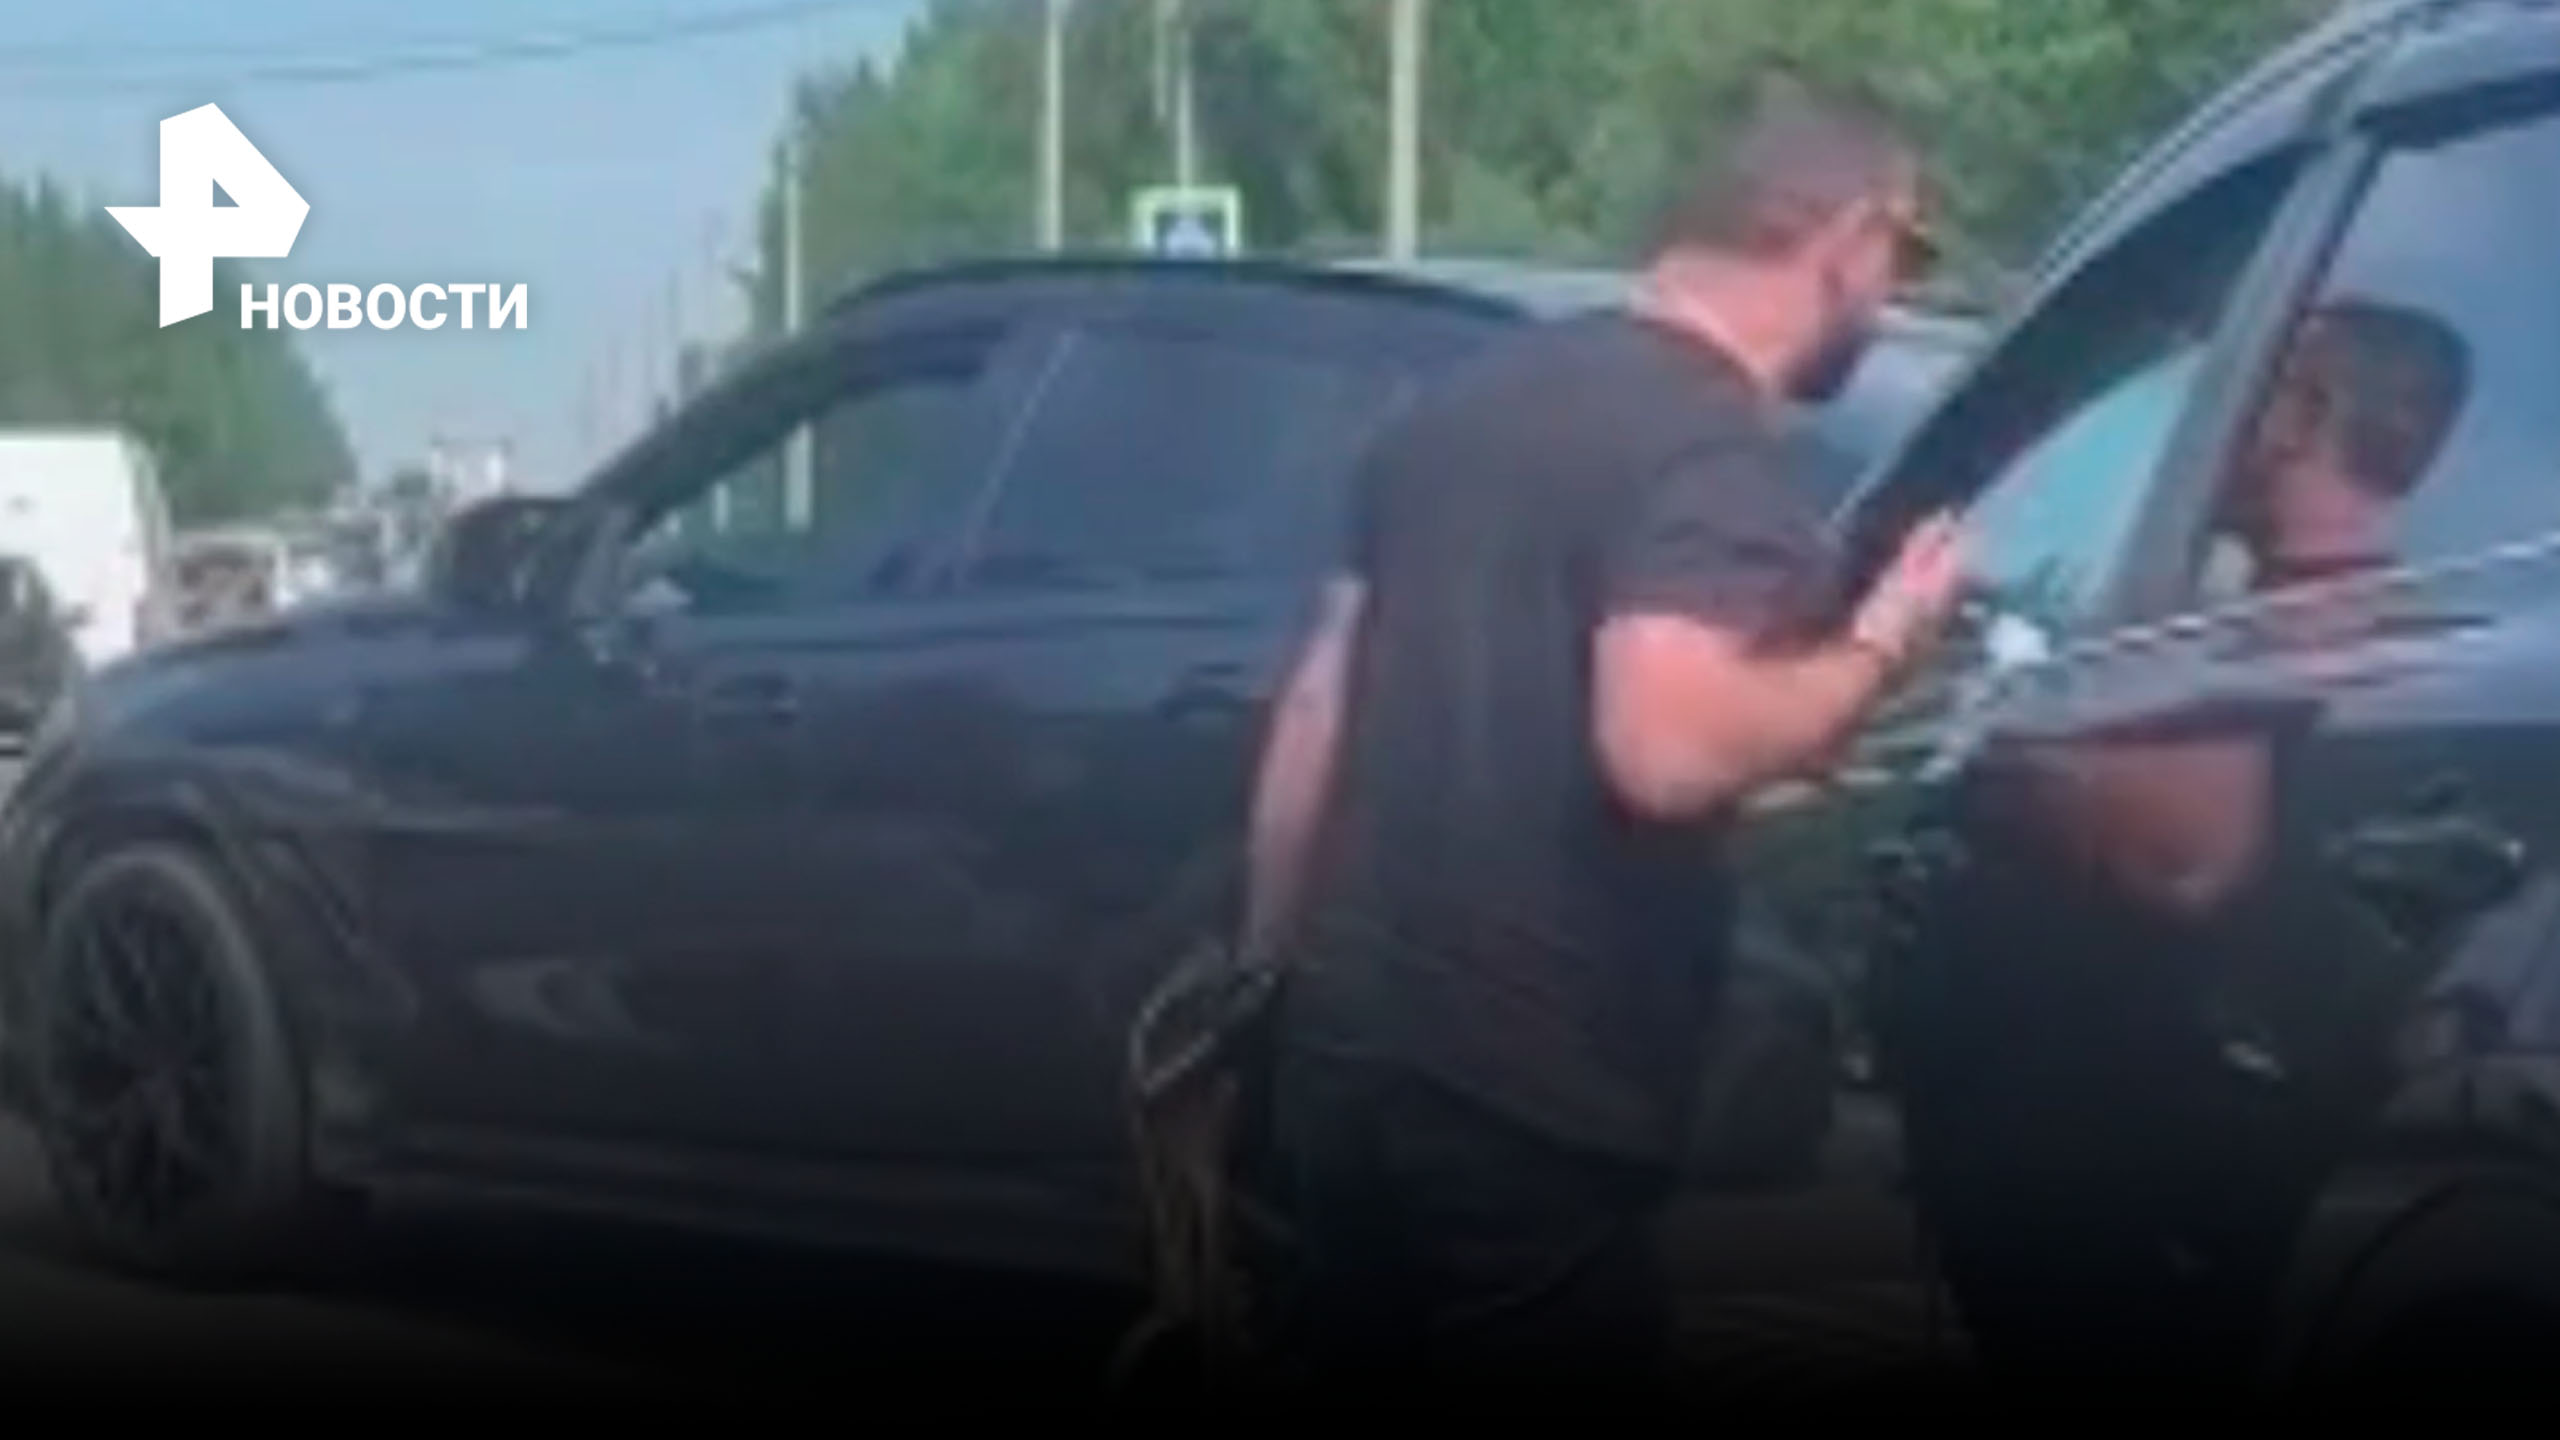 Разборки с автоматом: разъяренный мужчина с оружием угрожал водителям / РЕН Новости